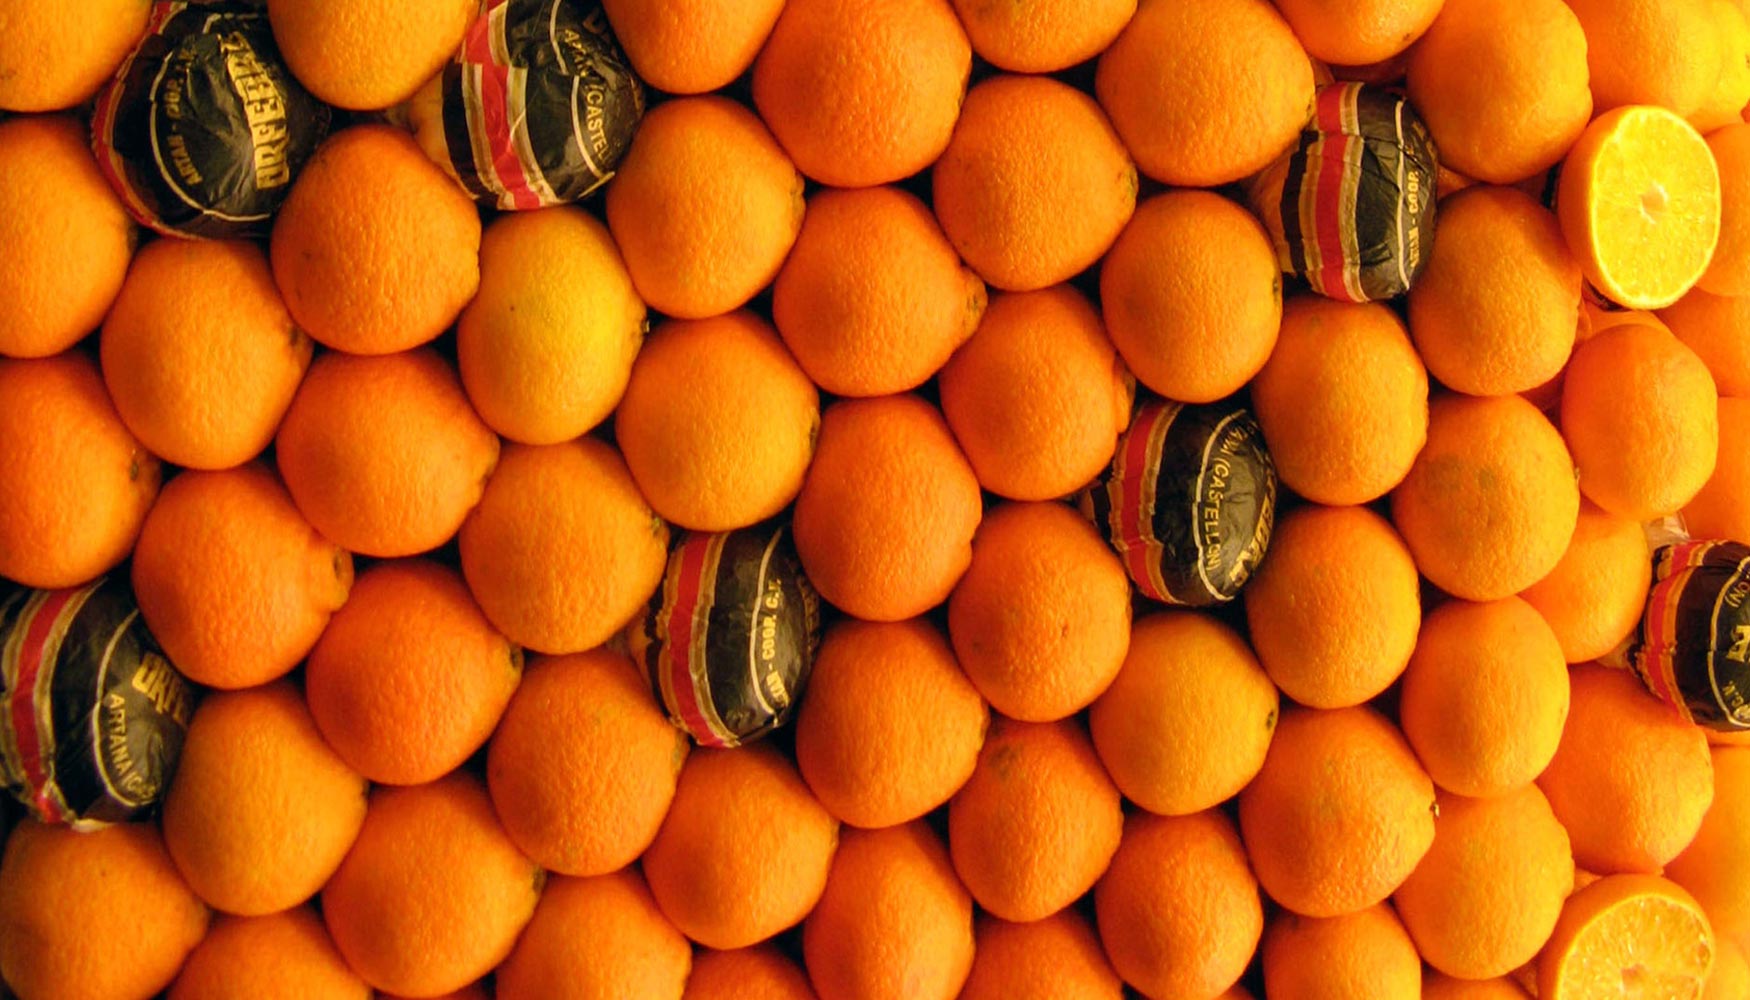 Los desechos de la piel de naranja pueden ser empleados para obtener otros productos y, al mismo tiempo, disminuir el impacto ambiental que producen...